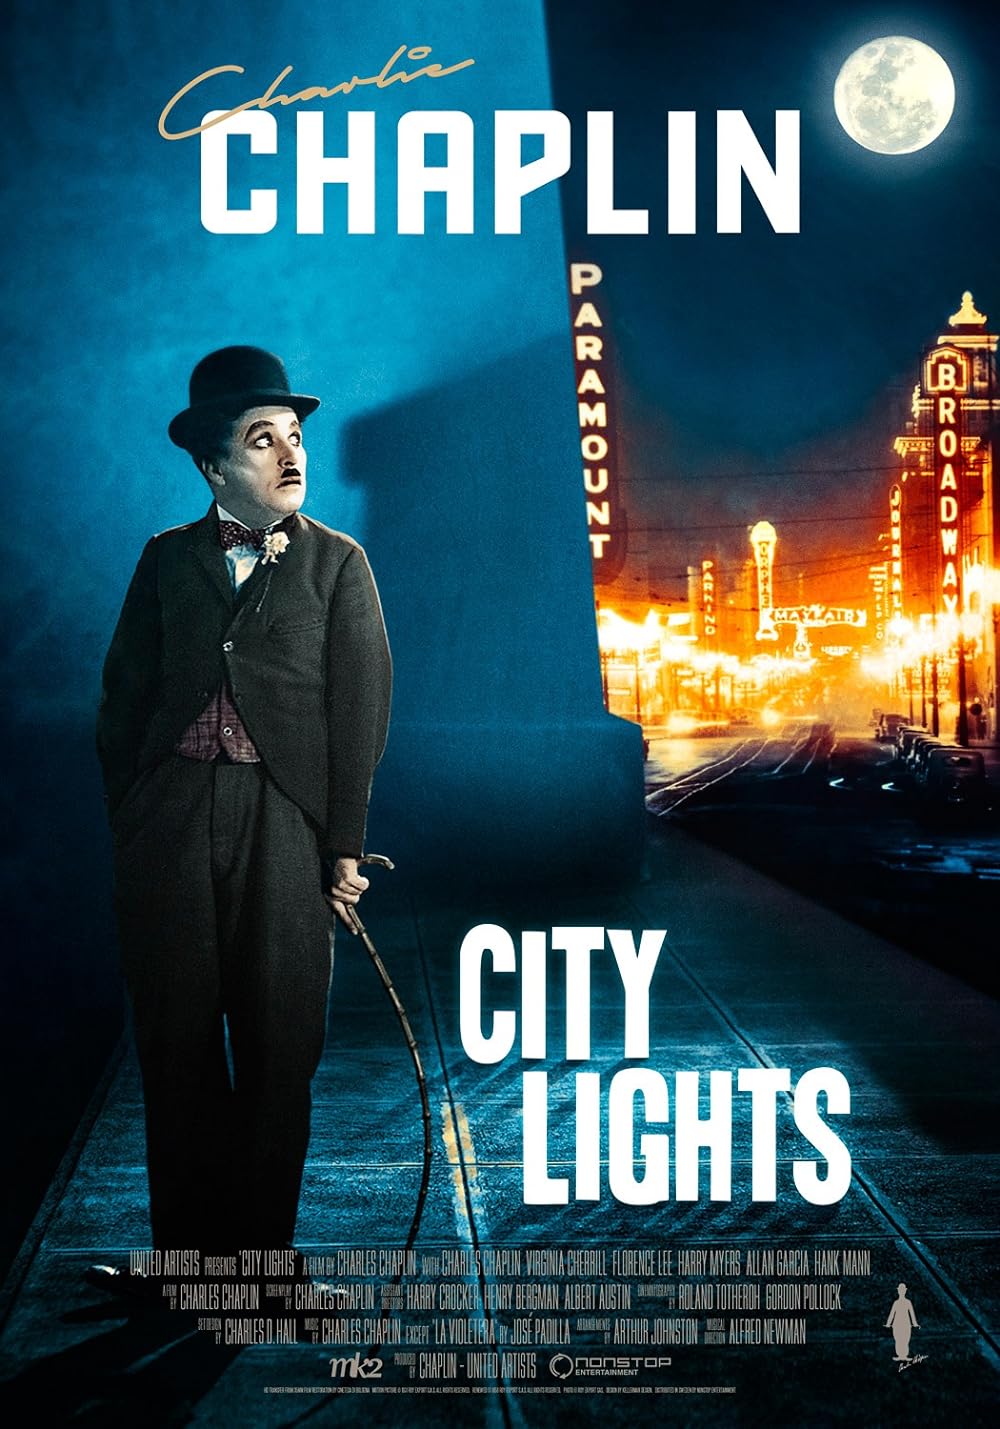 City Lights (1931) 192Kbps 23.976Fps 48Khz 2.0Ch DigitalTV Turkish Audio TAC